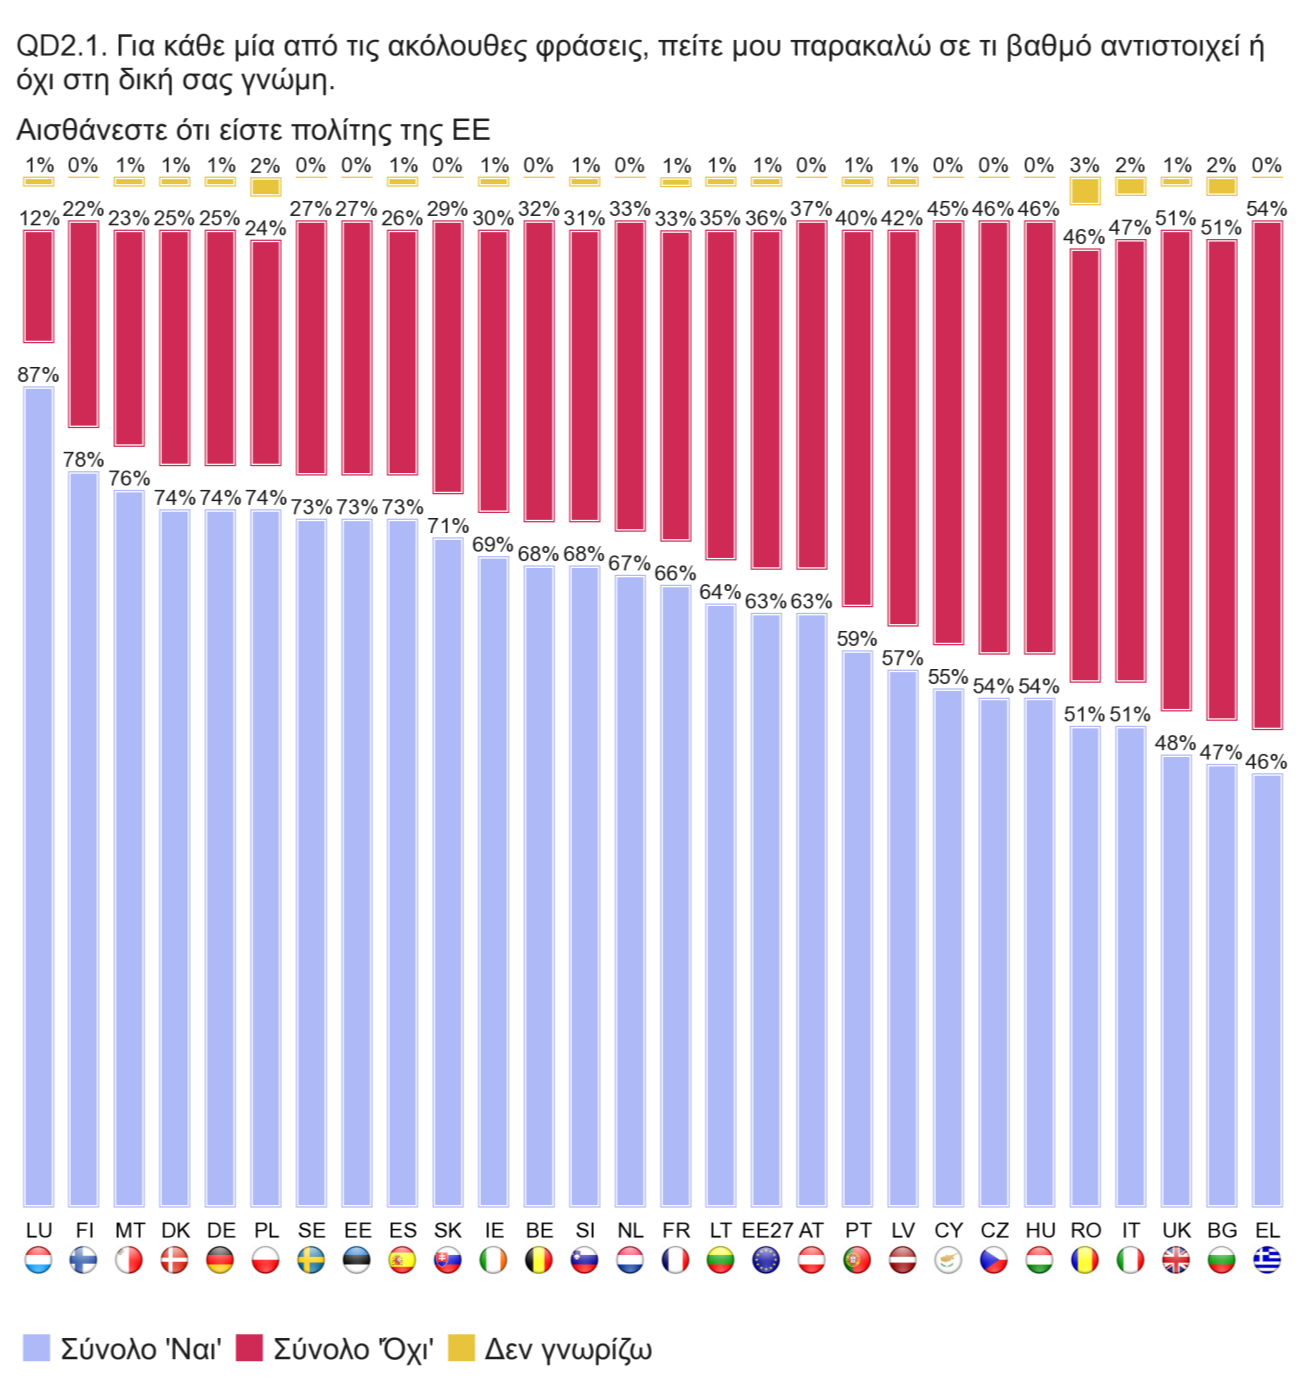 Τα δικαιώματα ως πολίτης της Ευρωπαϊκής Ένωσης Οι Έλληνες, σε ποσοστό 54% (το υψηλότερο της έρευνας) δηλώνουν ότι δεν αισθάνονται ότι είναι πολίτες της Ευρωπαϊκής Ένωσης.